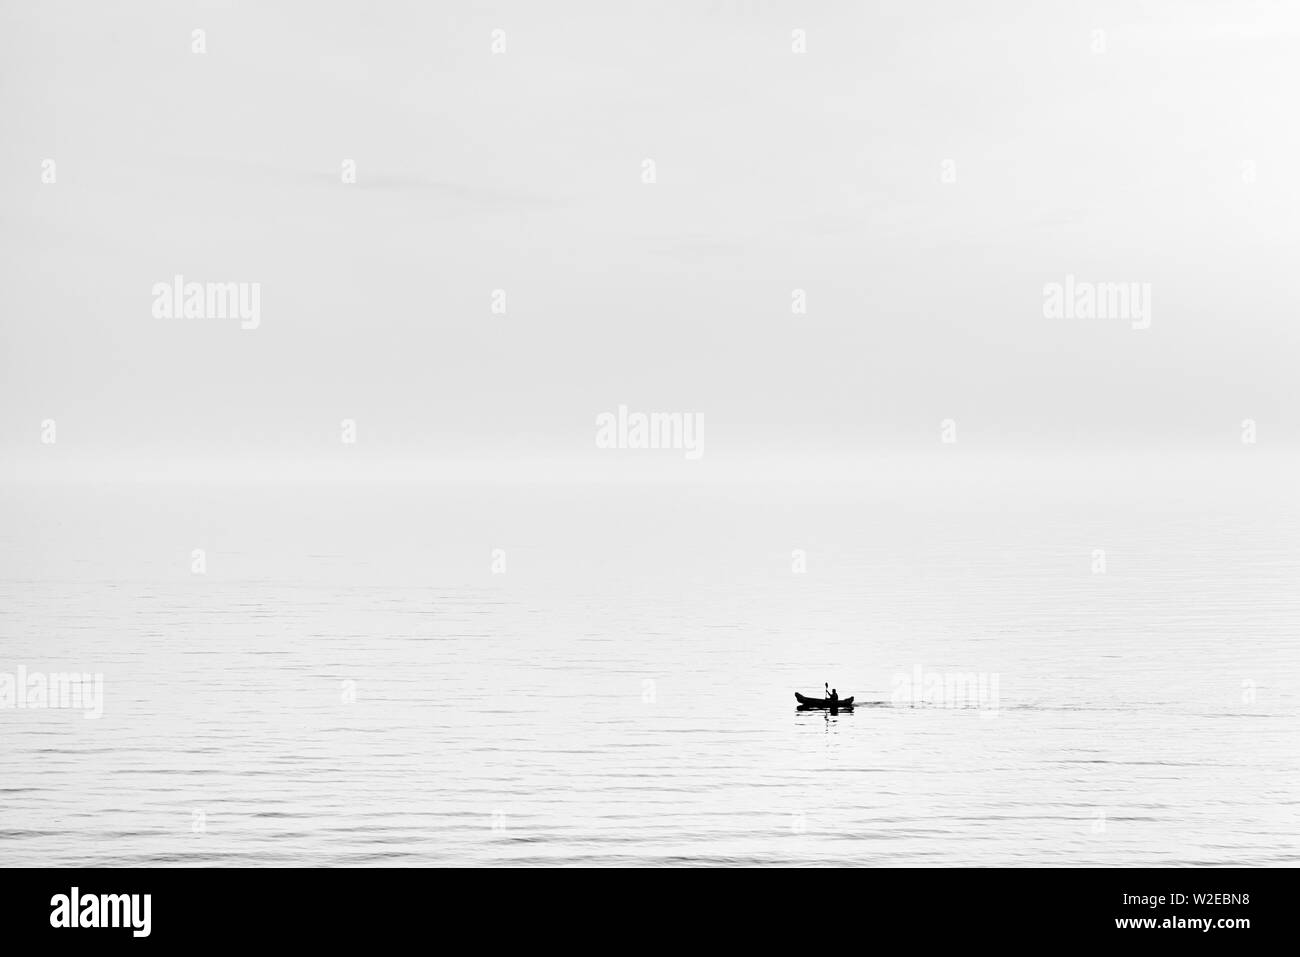 Silhouette einer Kajak auf dem Meer in Schwarz und Weiß Stockfoto